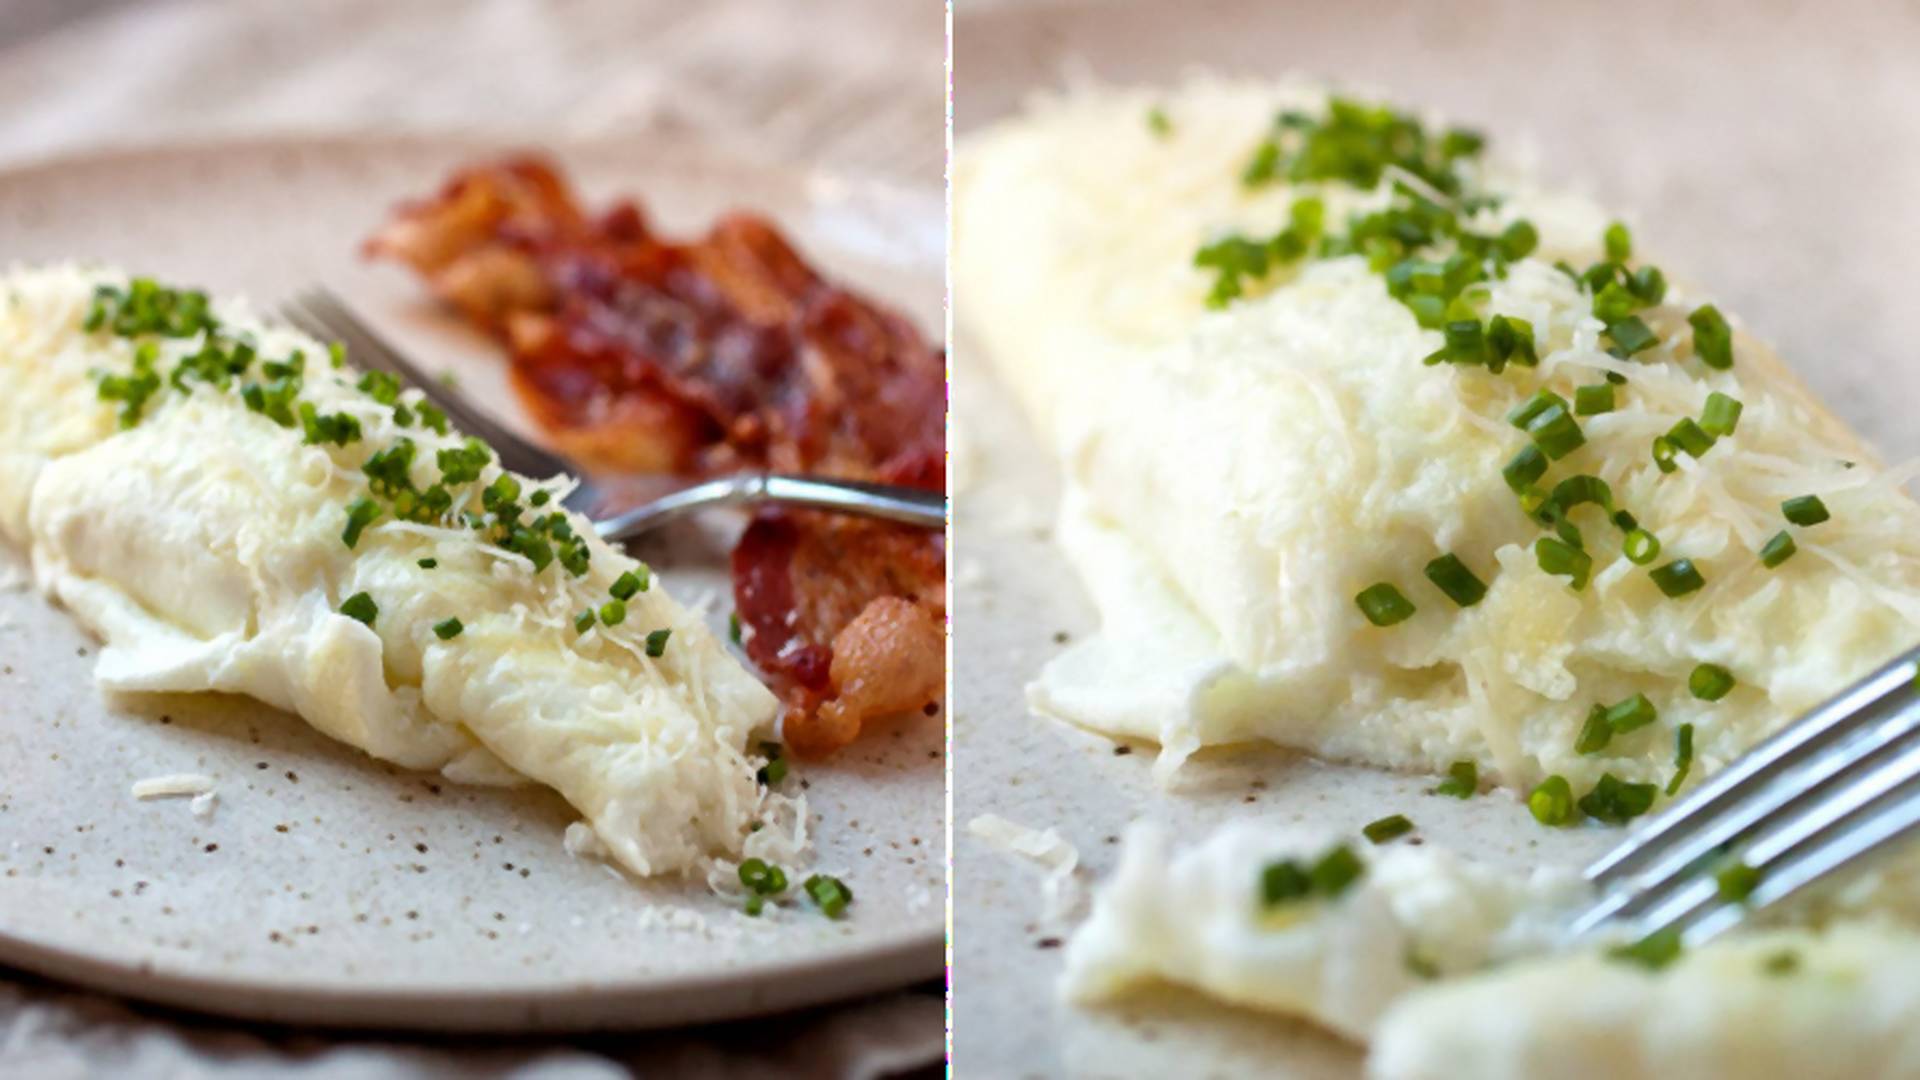 Biały omlet - bez cholesterolu, niskokaloryczny i równie smaczny, co tradycyjny!